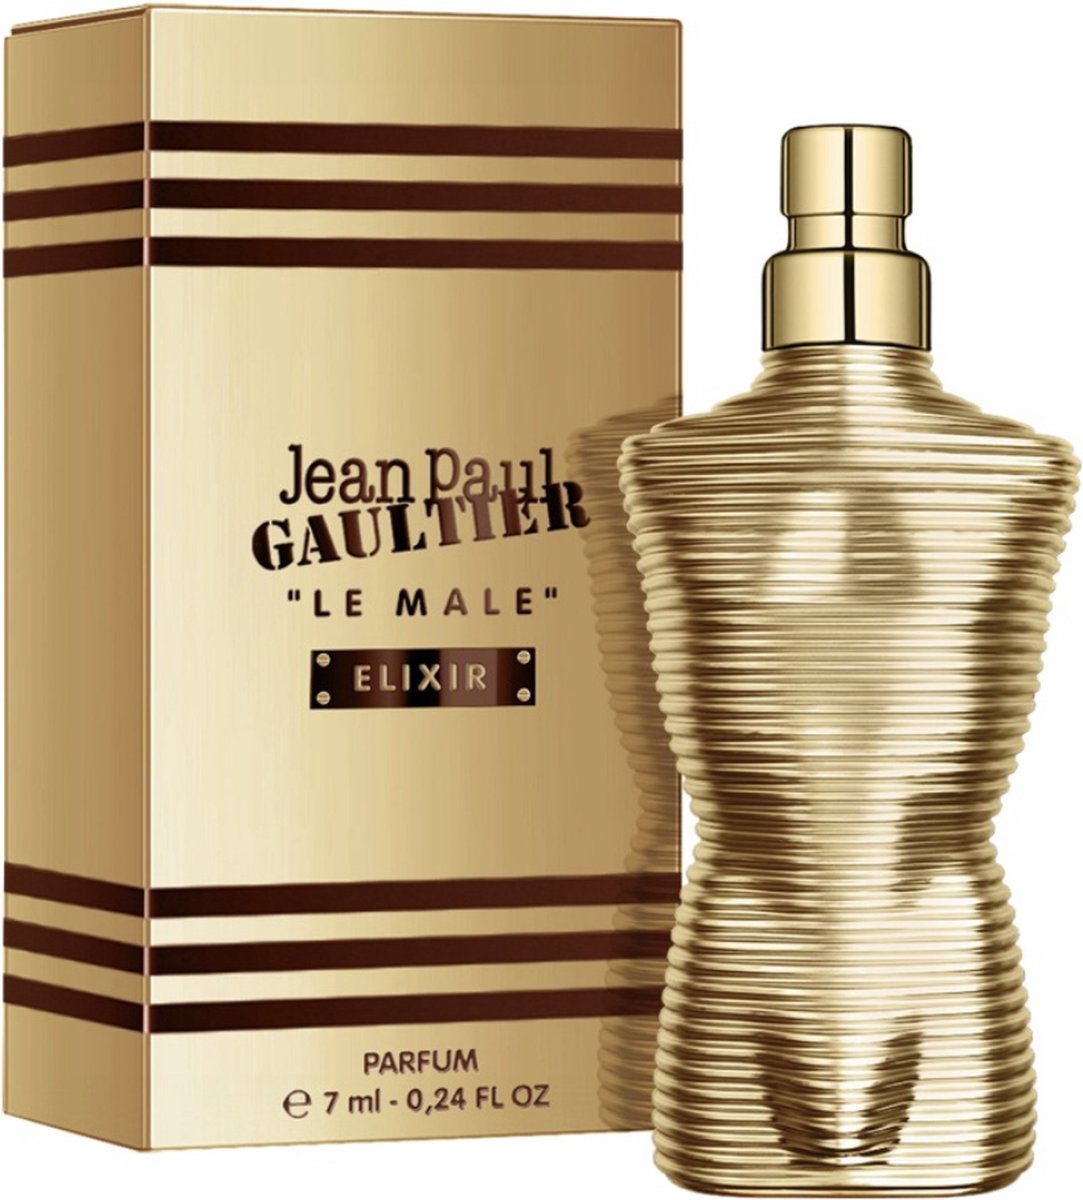 Jean P. Gaultier Le Male Elixir - parfém - miniatura 7 ml